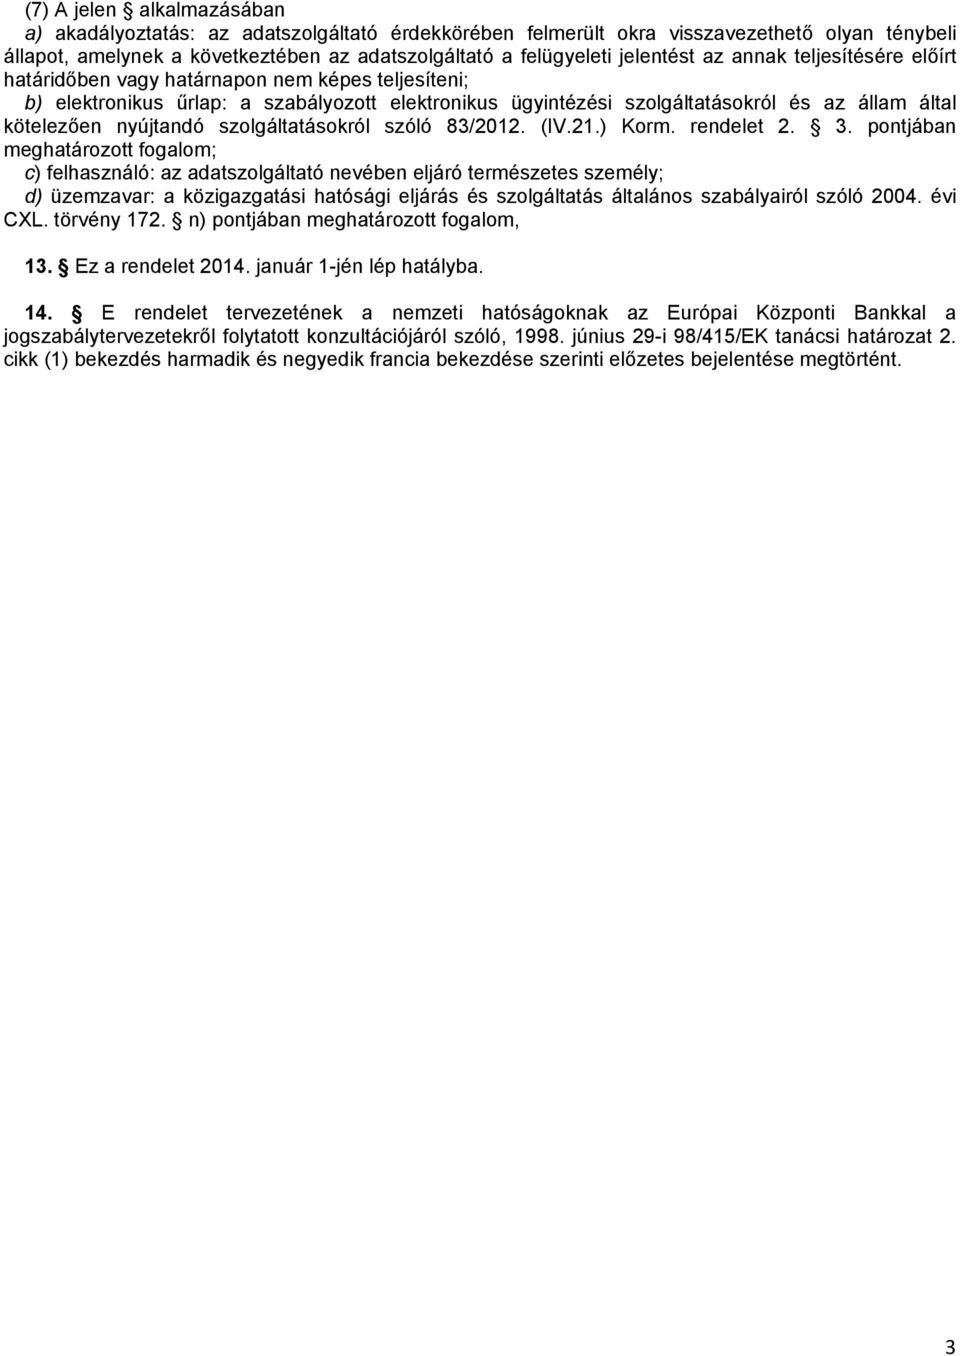 kötelezően nyújtandó szolgáltatásokról szóló 83/2012. (IV.21.) Korm. rendelet 2. 3.